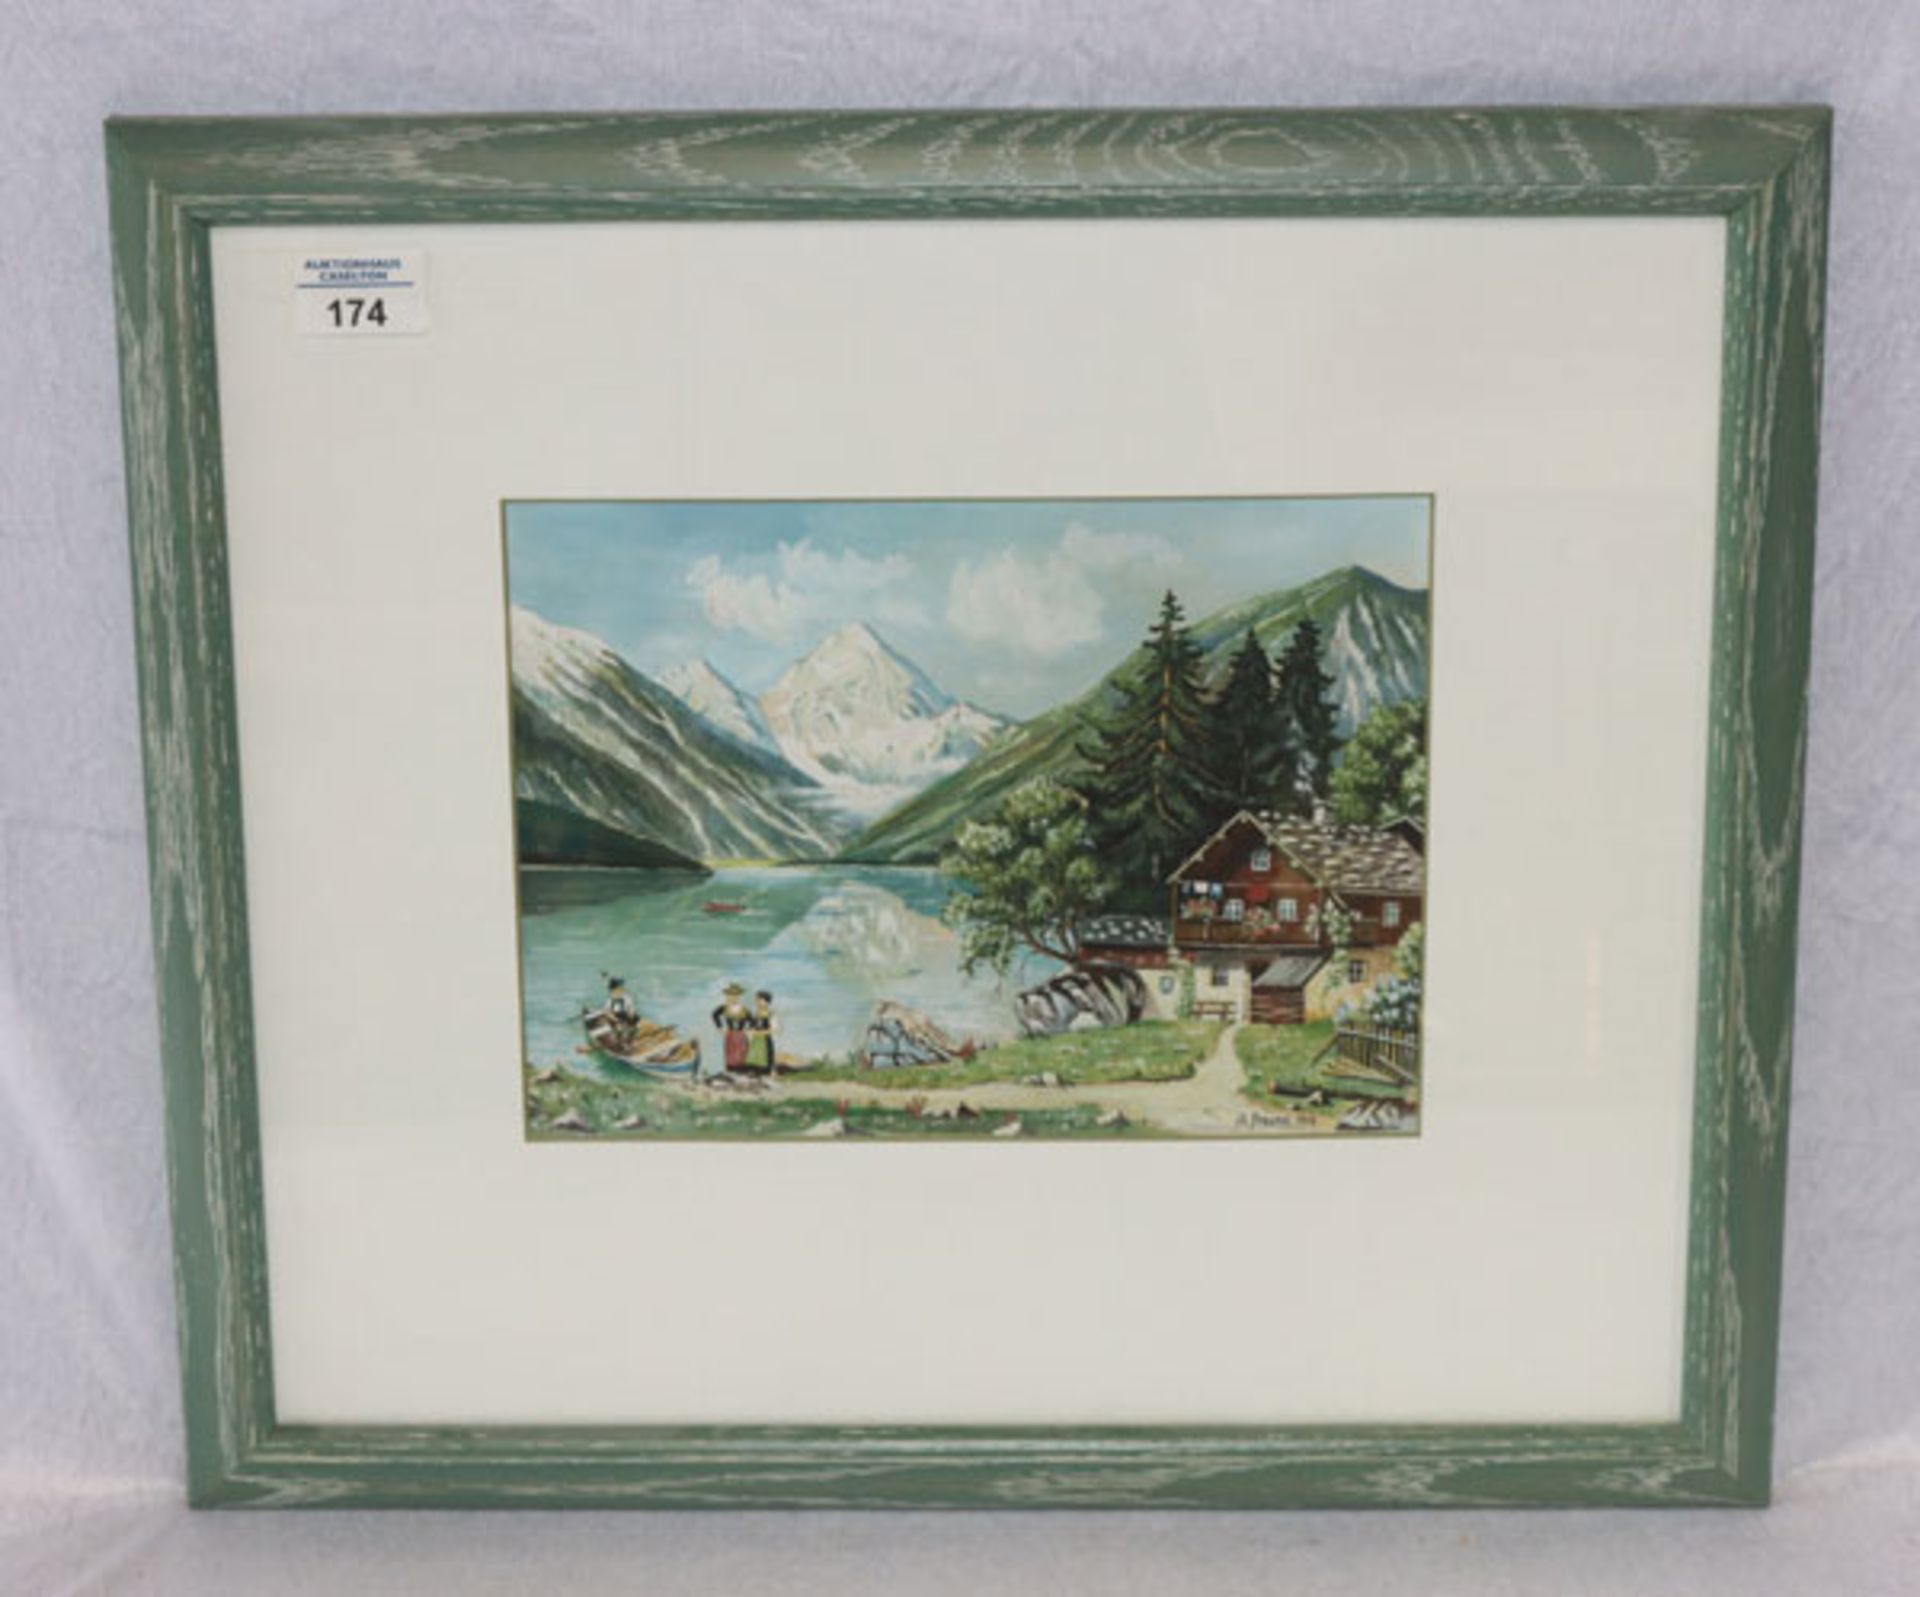 Gemälde Mischtechnik 'Bayerische Gebirgssee-Szenerie mit Haus', signiert K. Freund 1943, mit